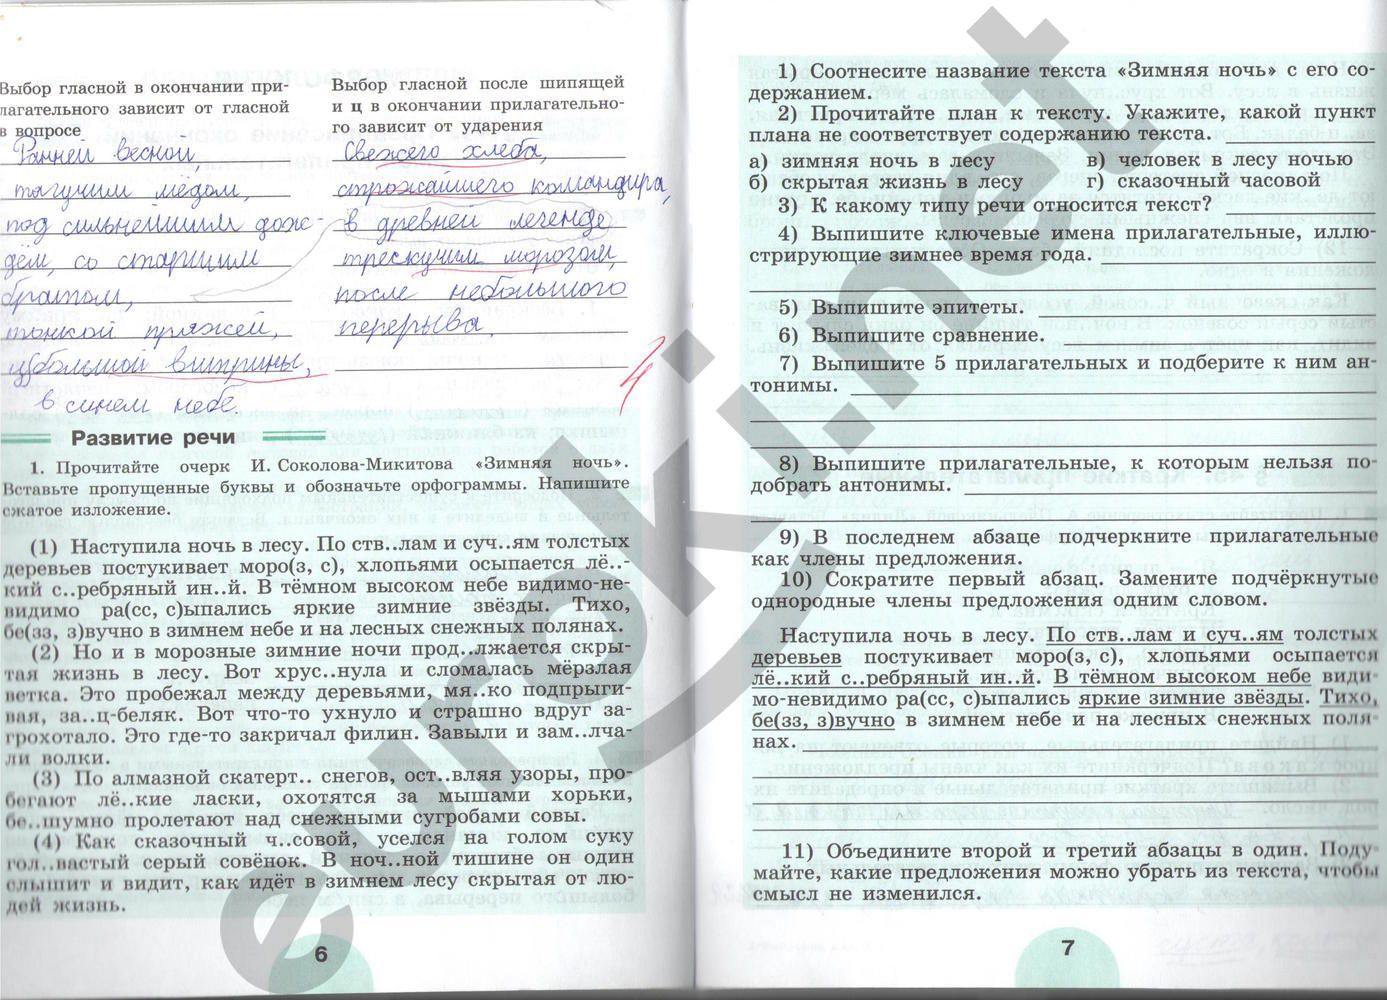 ГДЗ Русский язык 5 класс - стр. 6-7